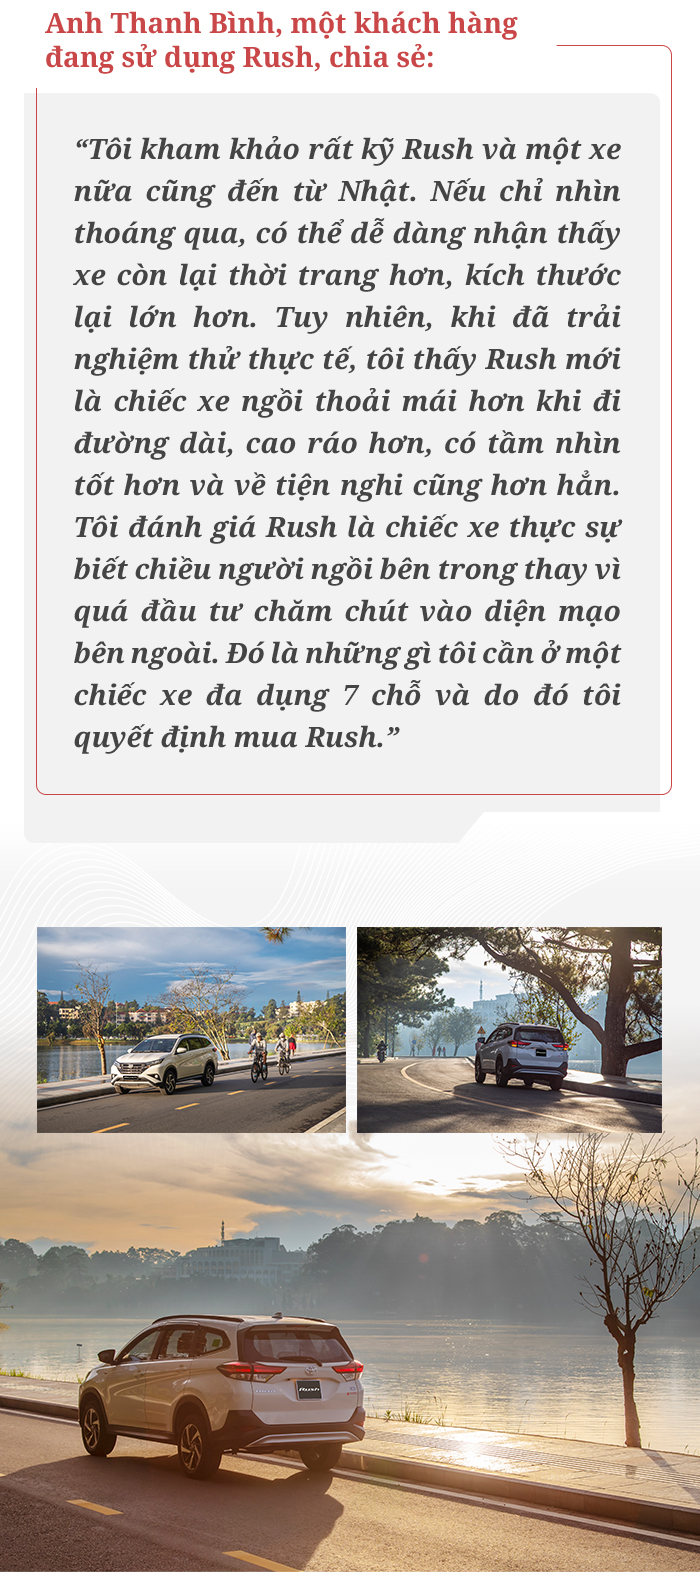 Toyota Rush mở ‘sân chơi’ riêng tại Việt Nam nhờ khả năng vận hành tối ưu - 19